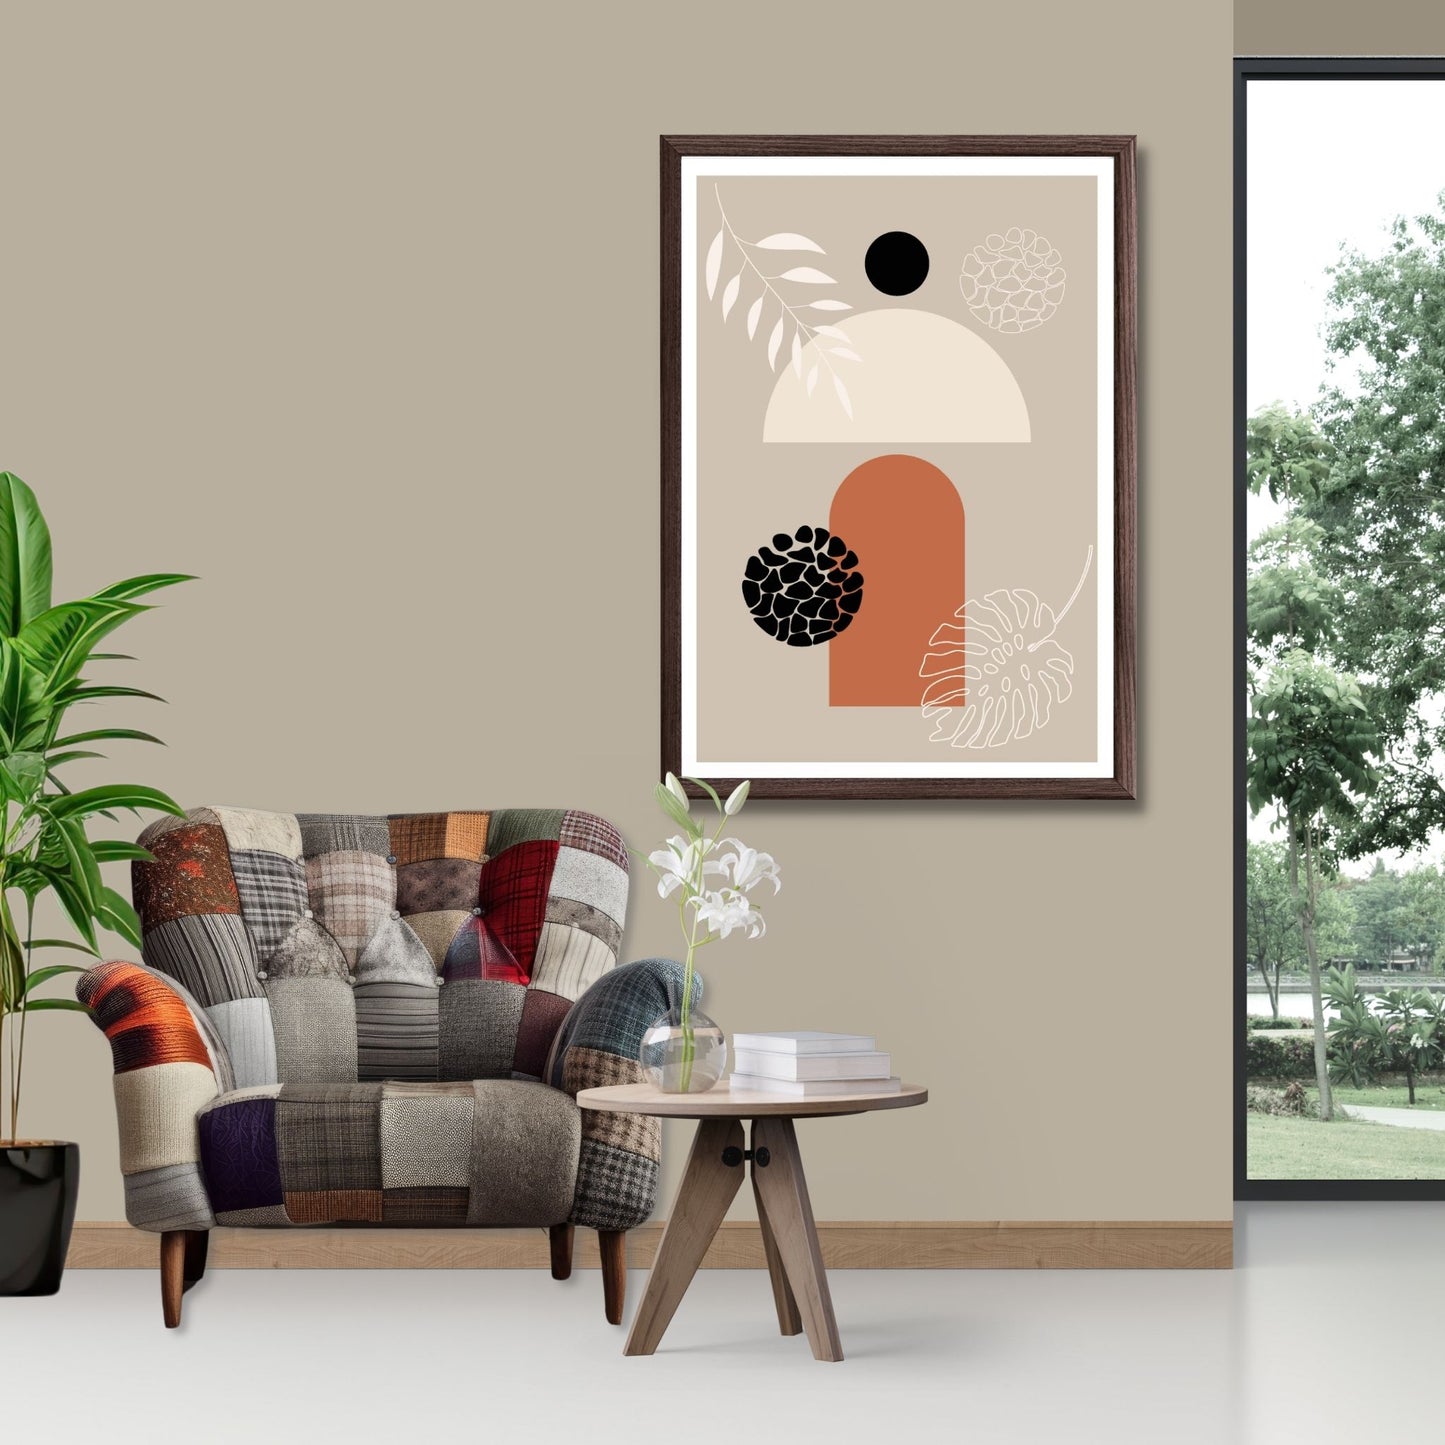 Abstract Shapes No3.3 i sort, beige, rust og hvite fargenyanser. Plakat har en hvit kant om gir dybde og fremhever motivet. Illustrasjon som viser motiv i brun ramme.